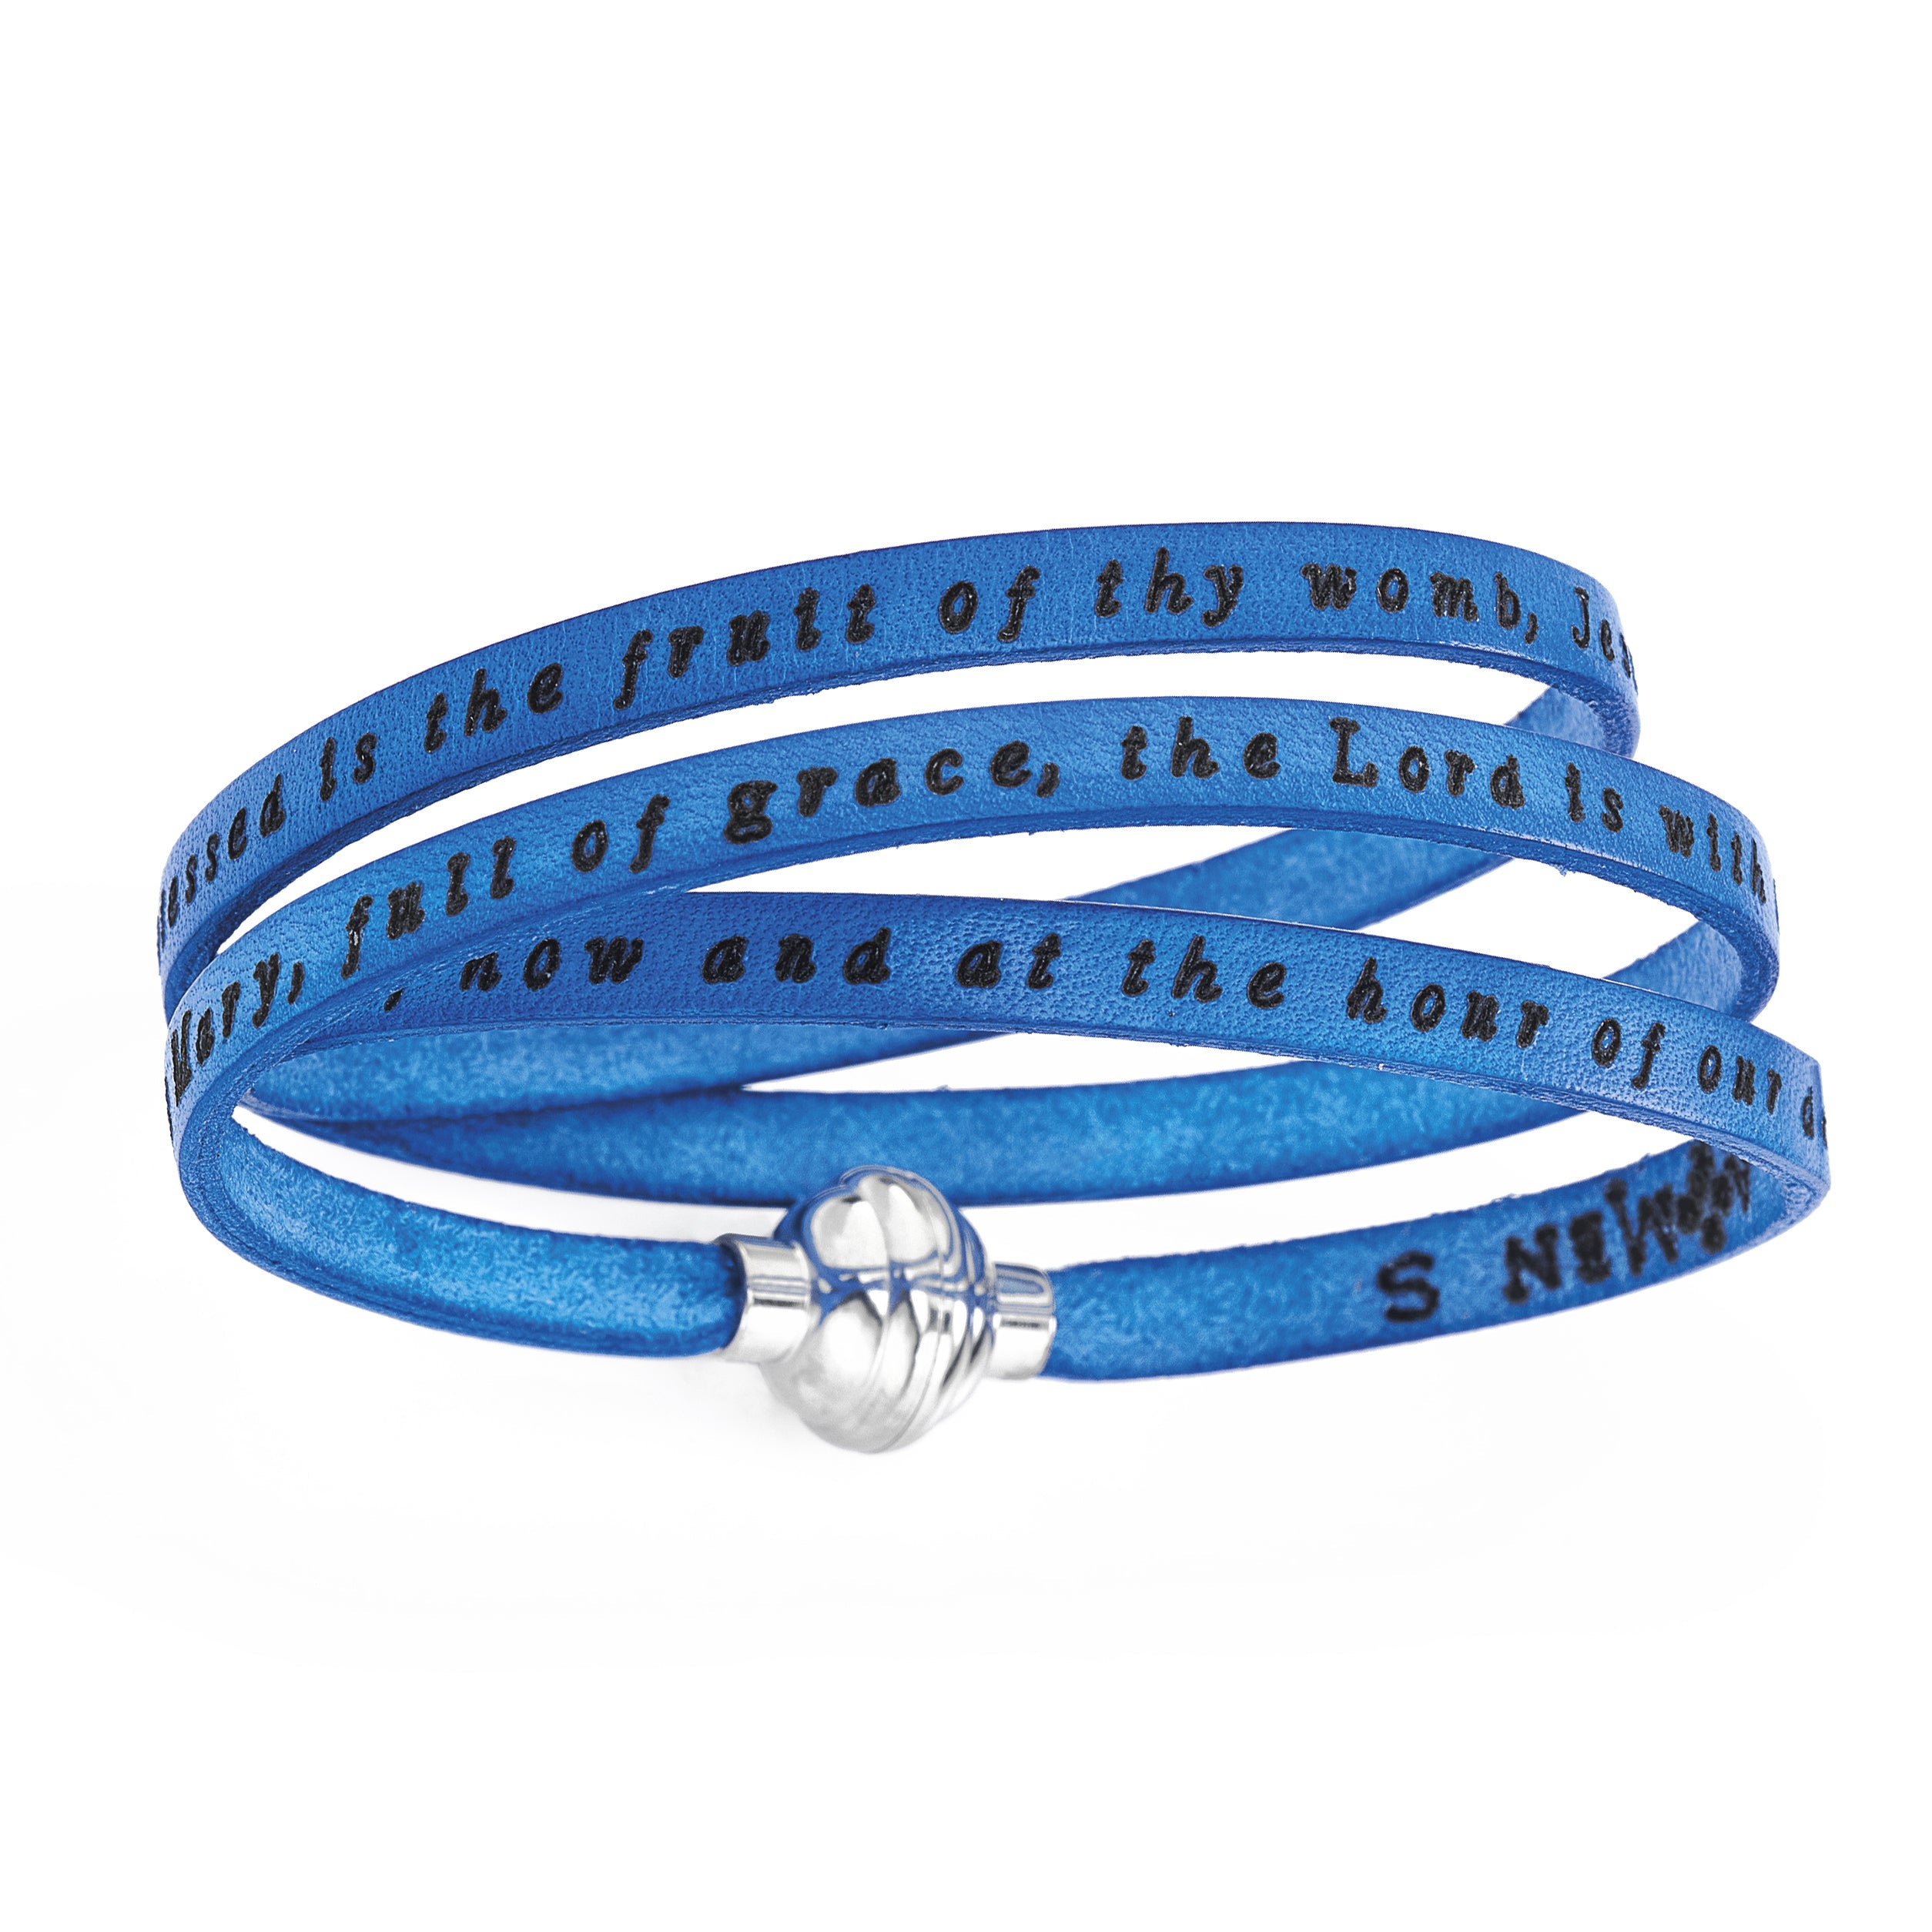 Prayer Bracelet: AMEN06/PNEN06 - AMEN Jewelry